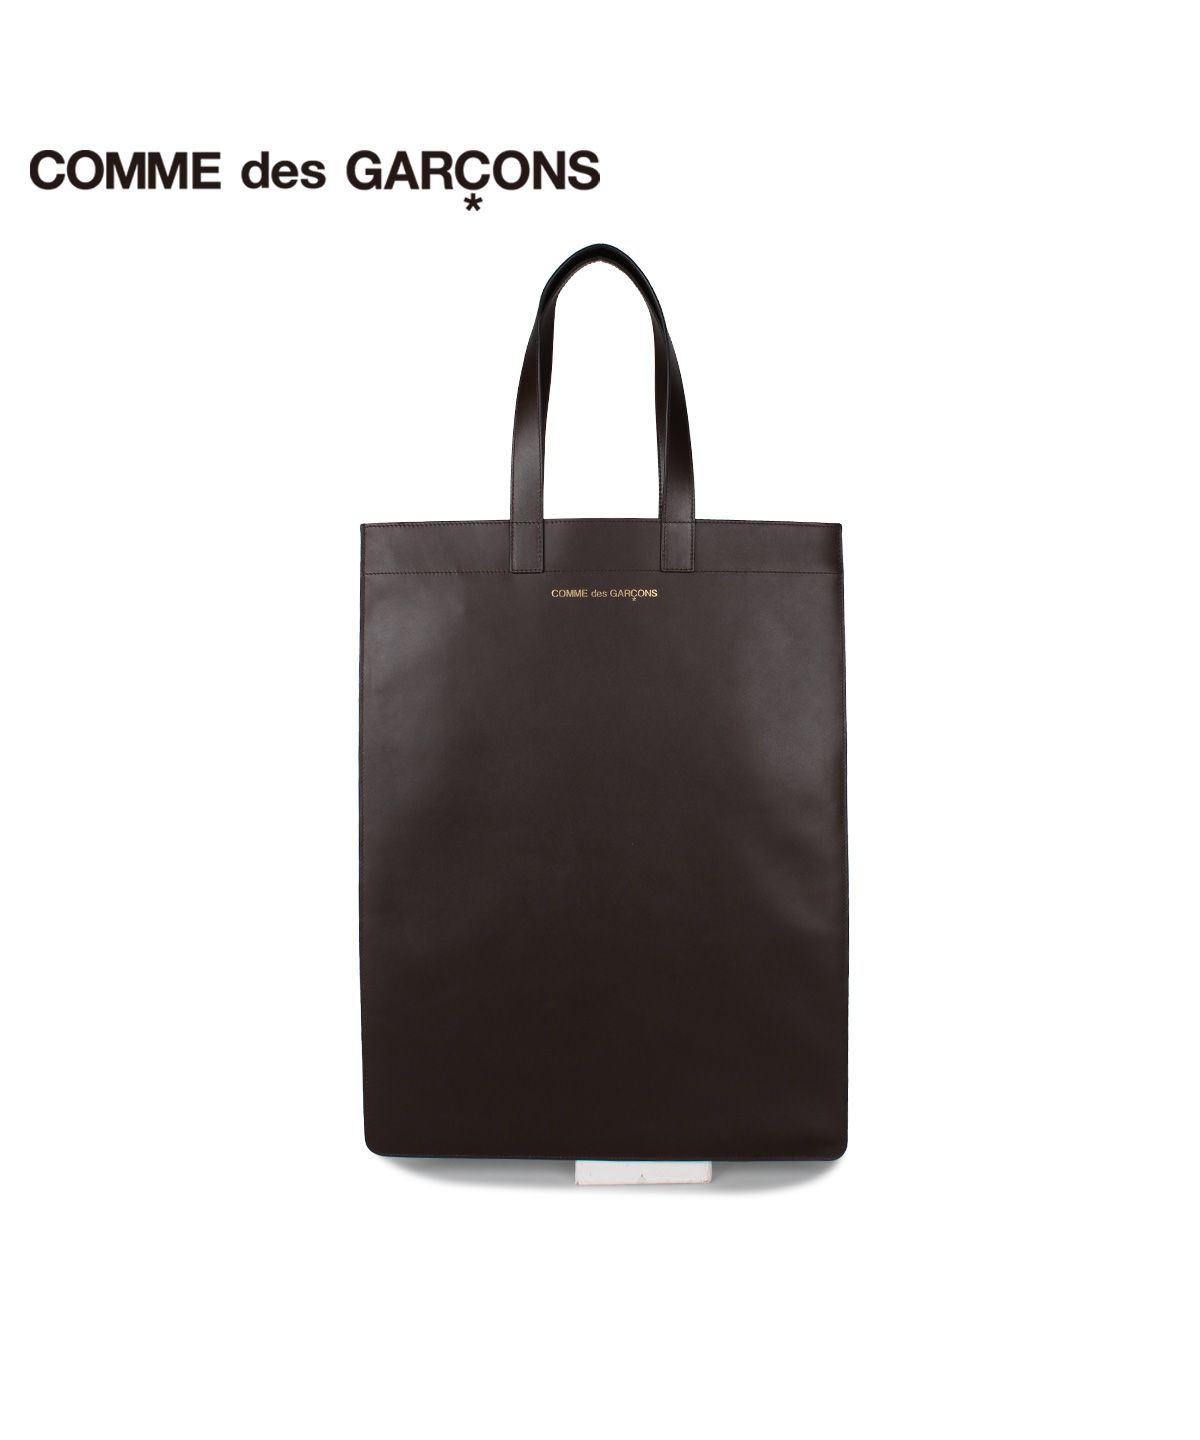 コムデギャルソン COMME des GARCONS バッグ トートバッグ メンズ レディース TOTE BAG ブラウン SA9002